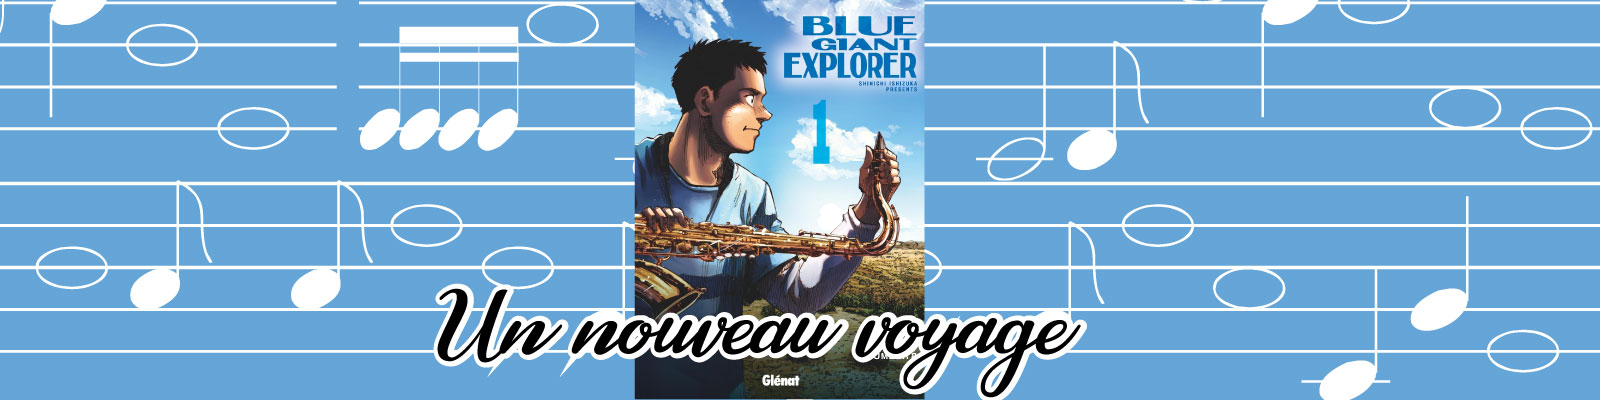 Blue Giant Explorer